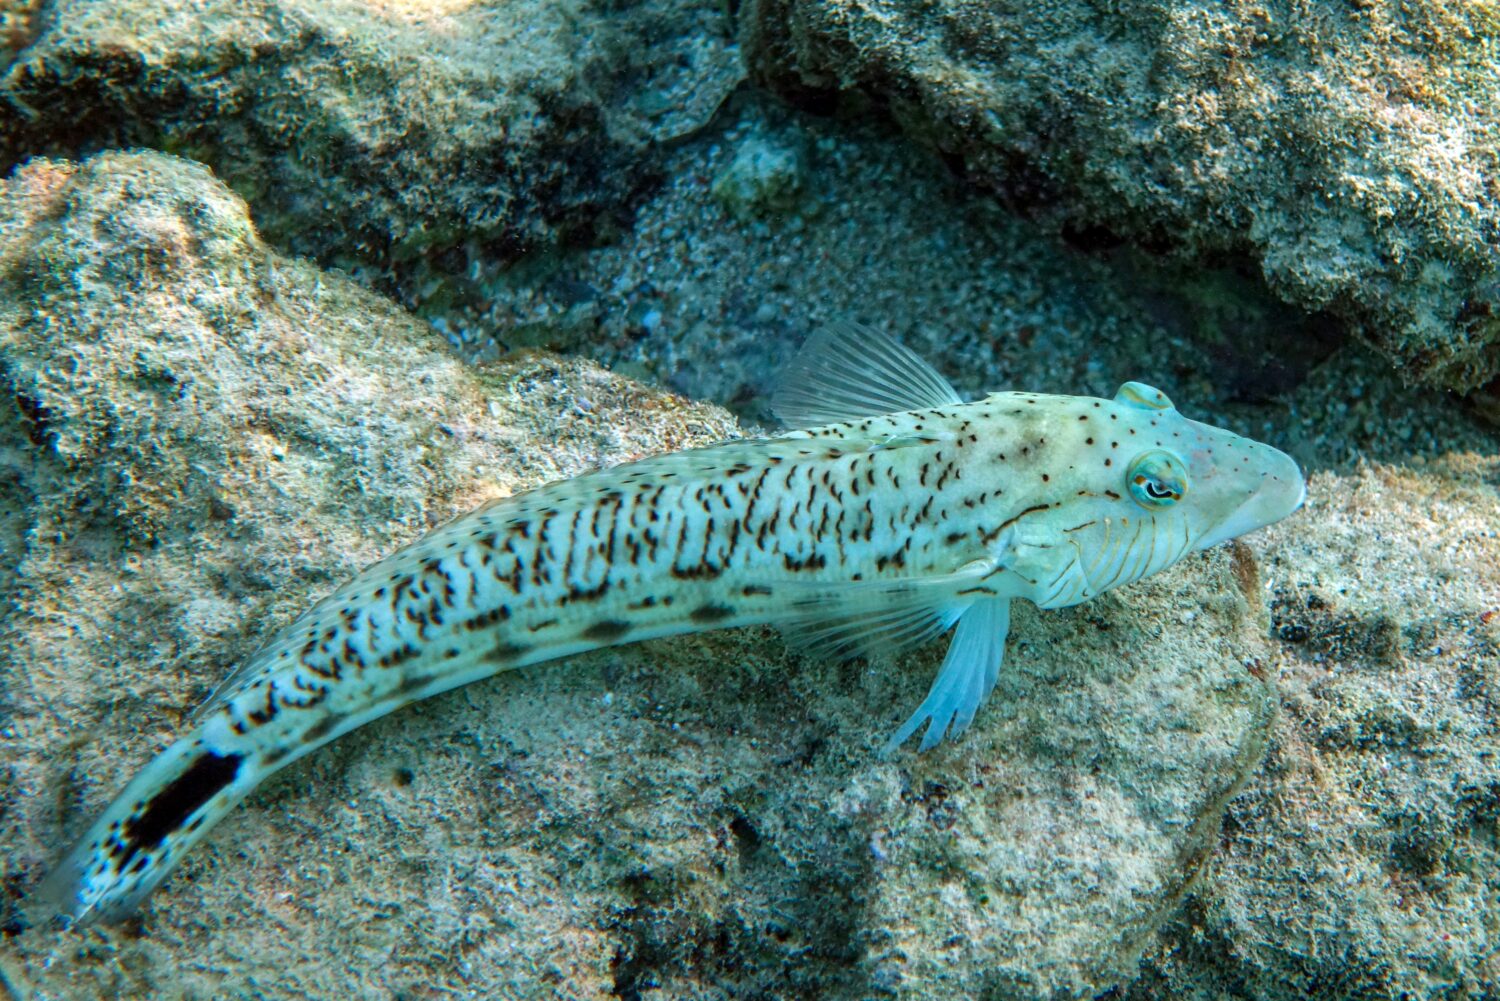 Pesci di sandperch maculati in Mar Rosso, Egitto                               